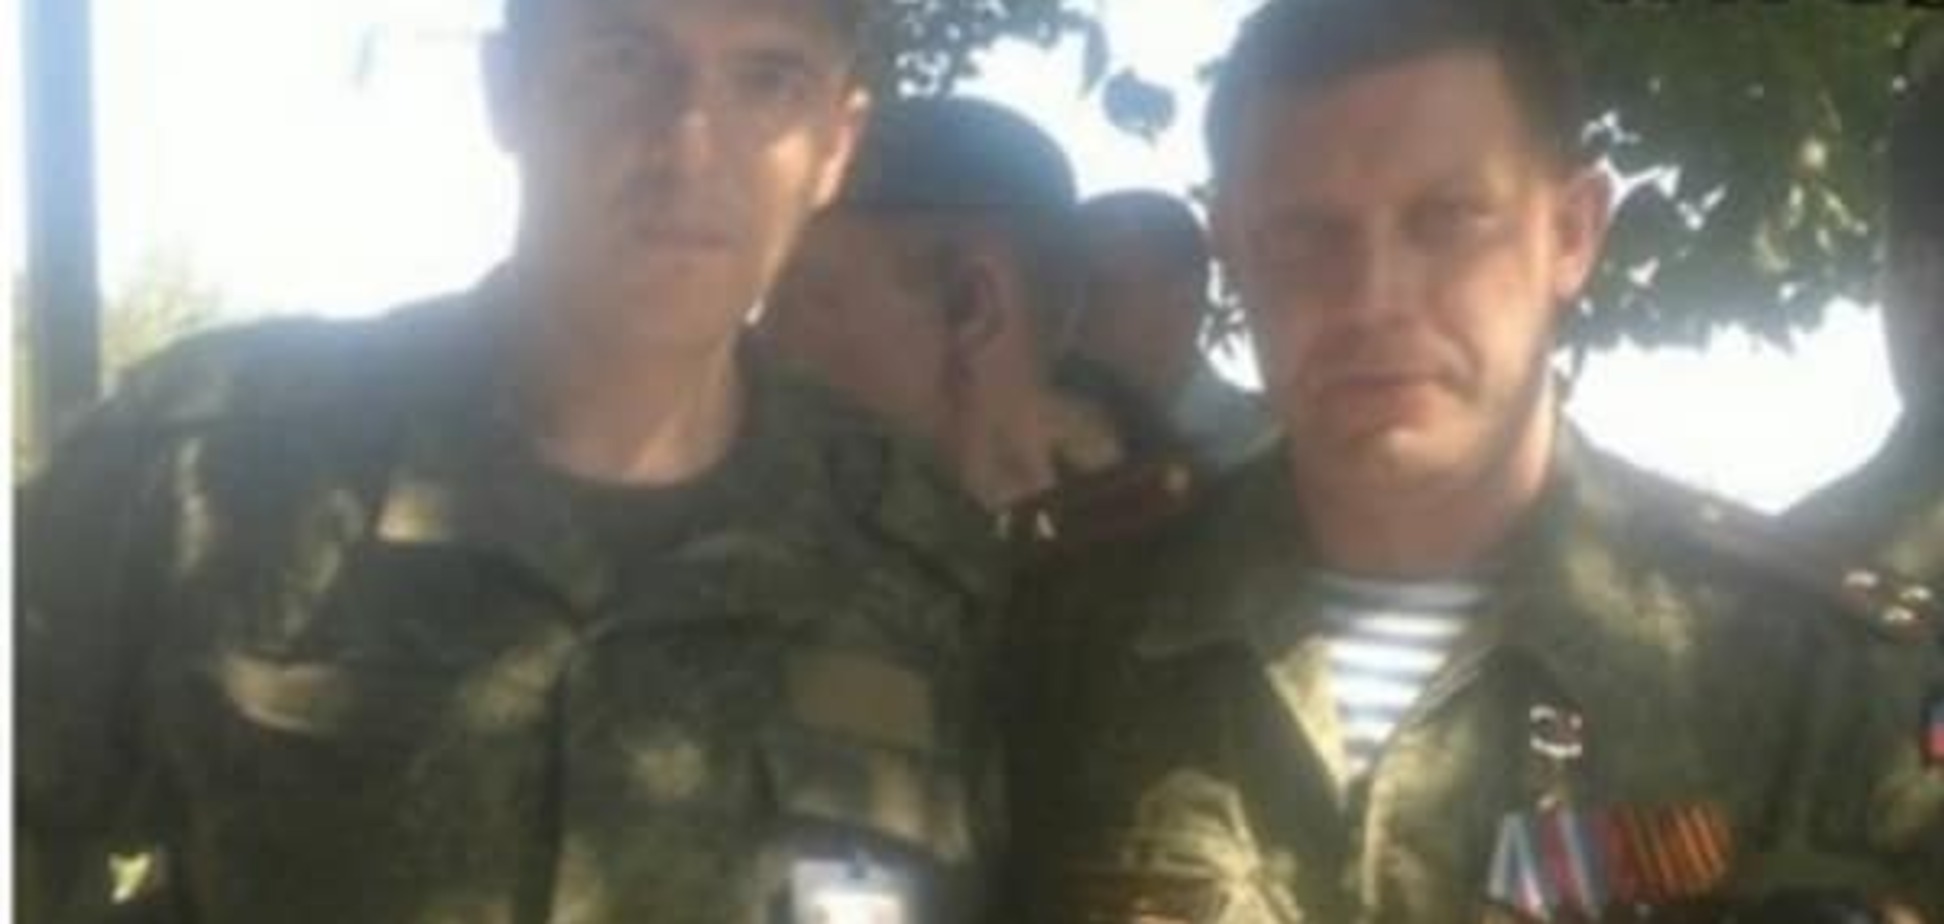 Российский военный похвастался оккупацией Донбасса и Крыма: опубликованы фото 